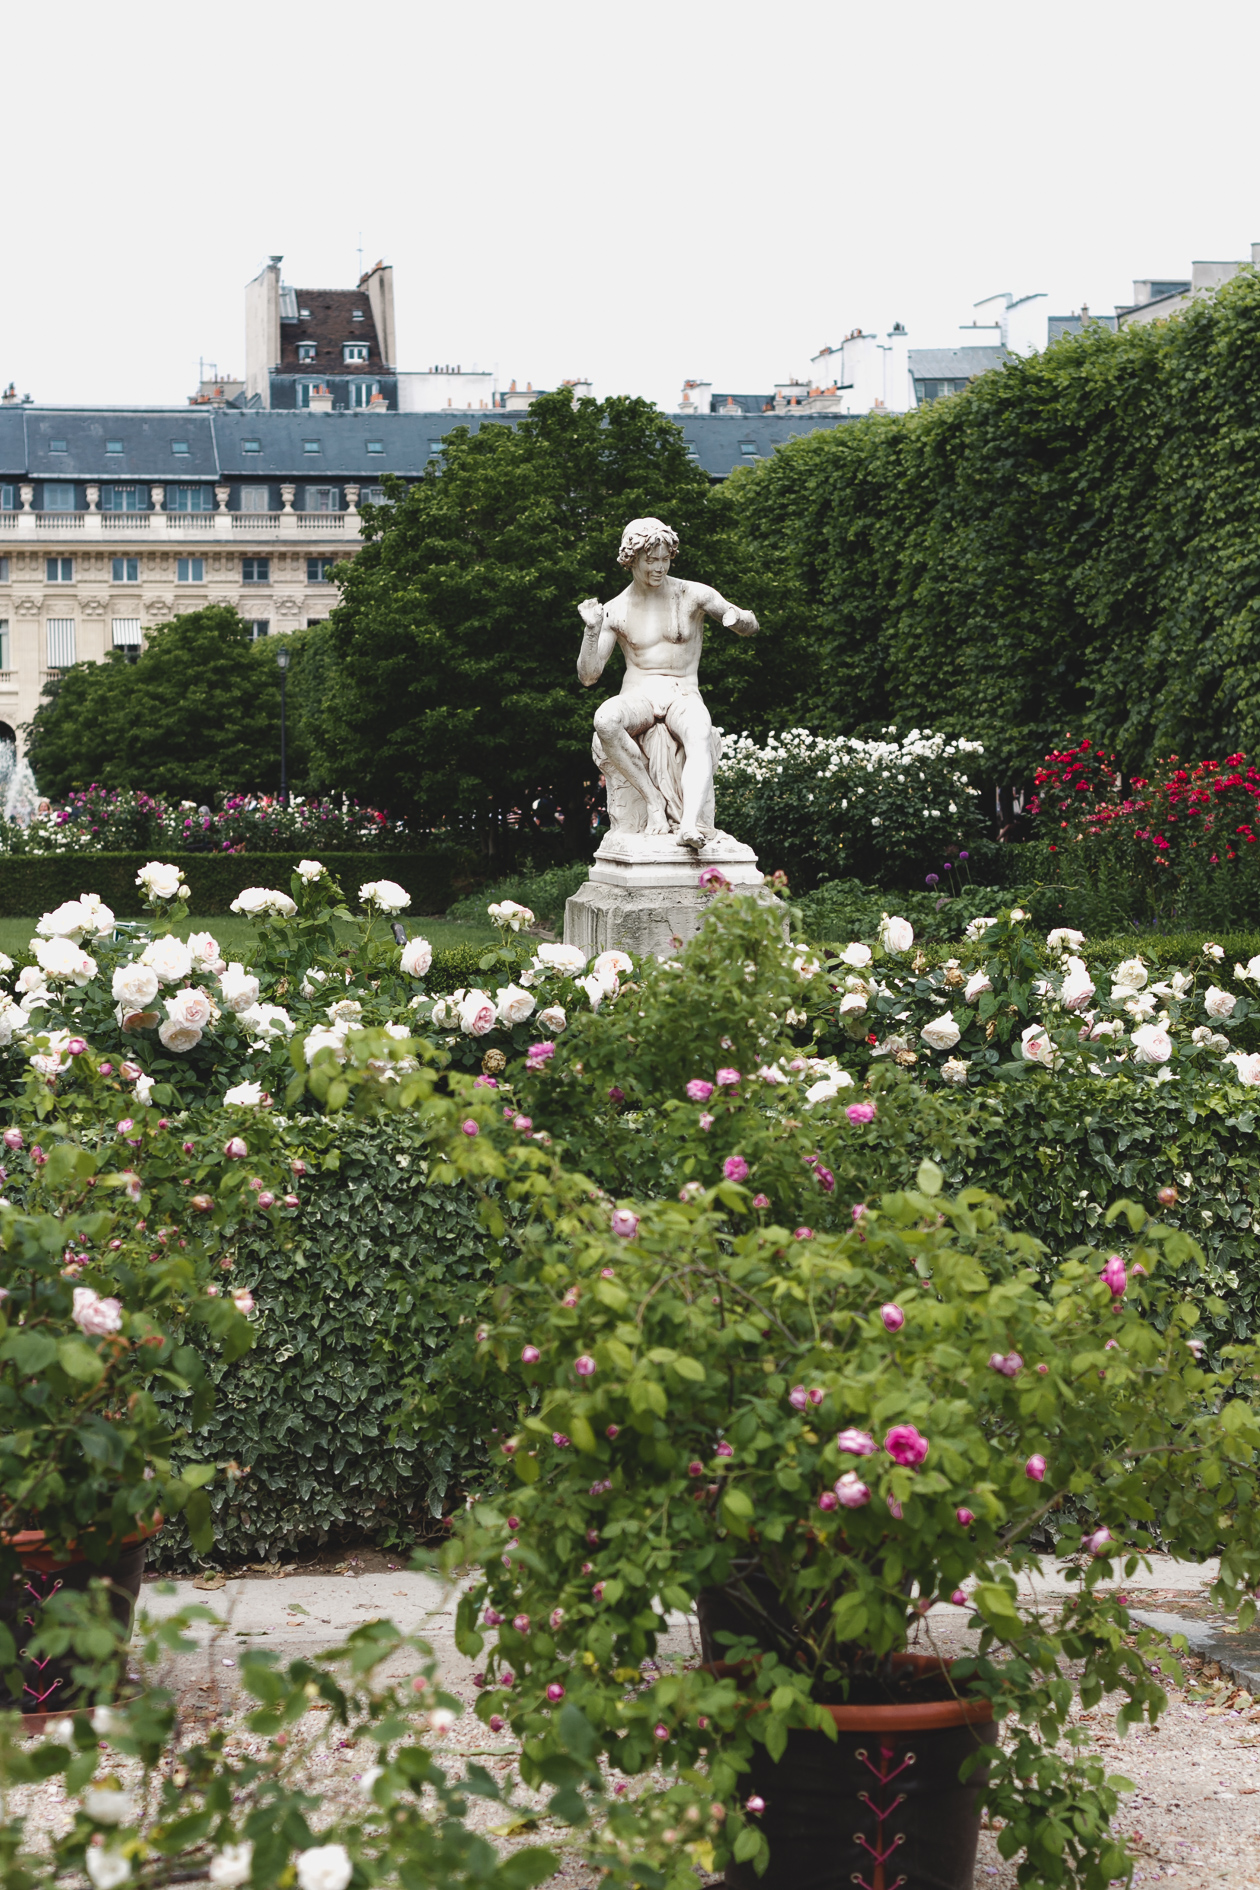 Palais-Royal Gardens